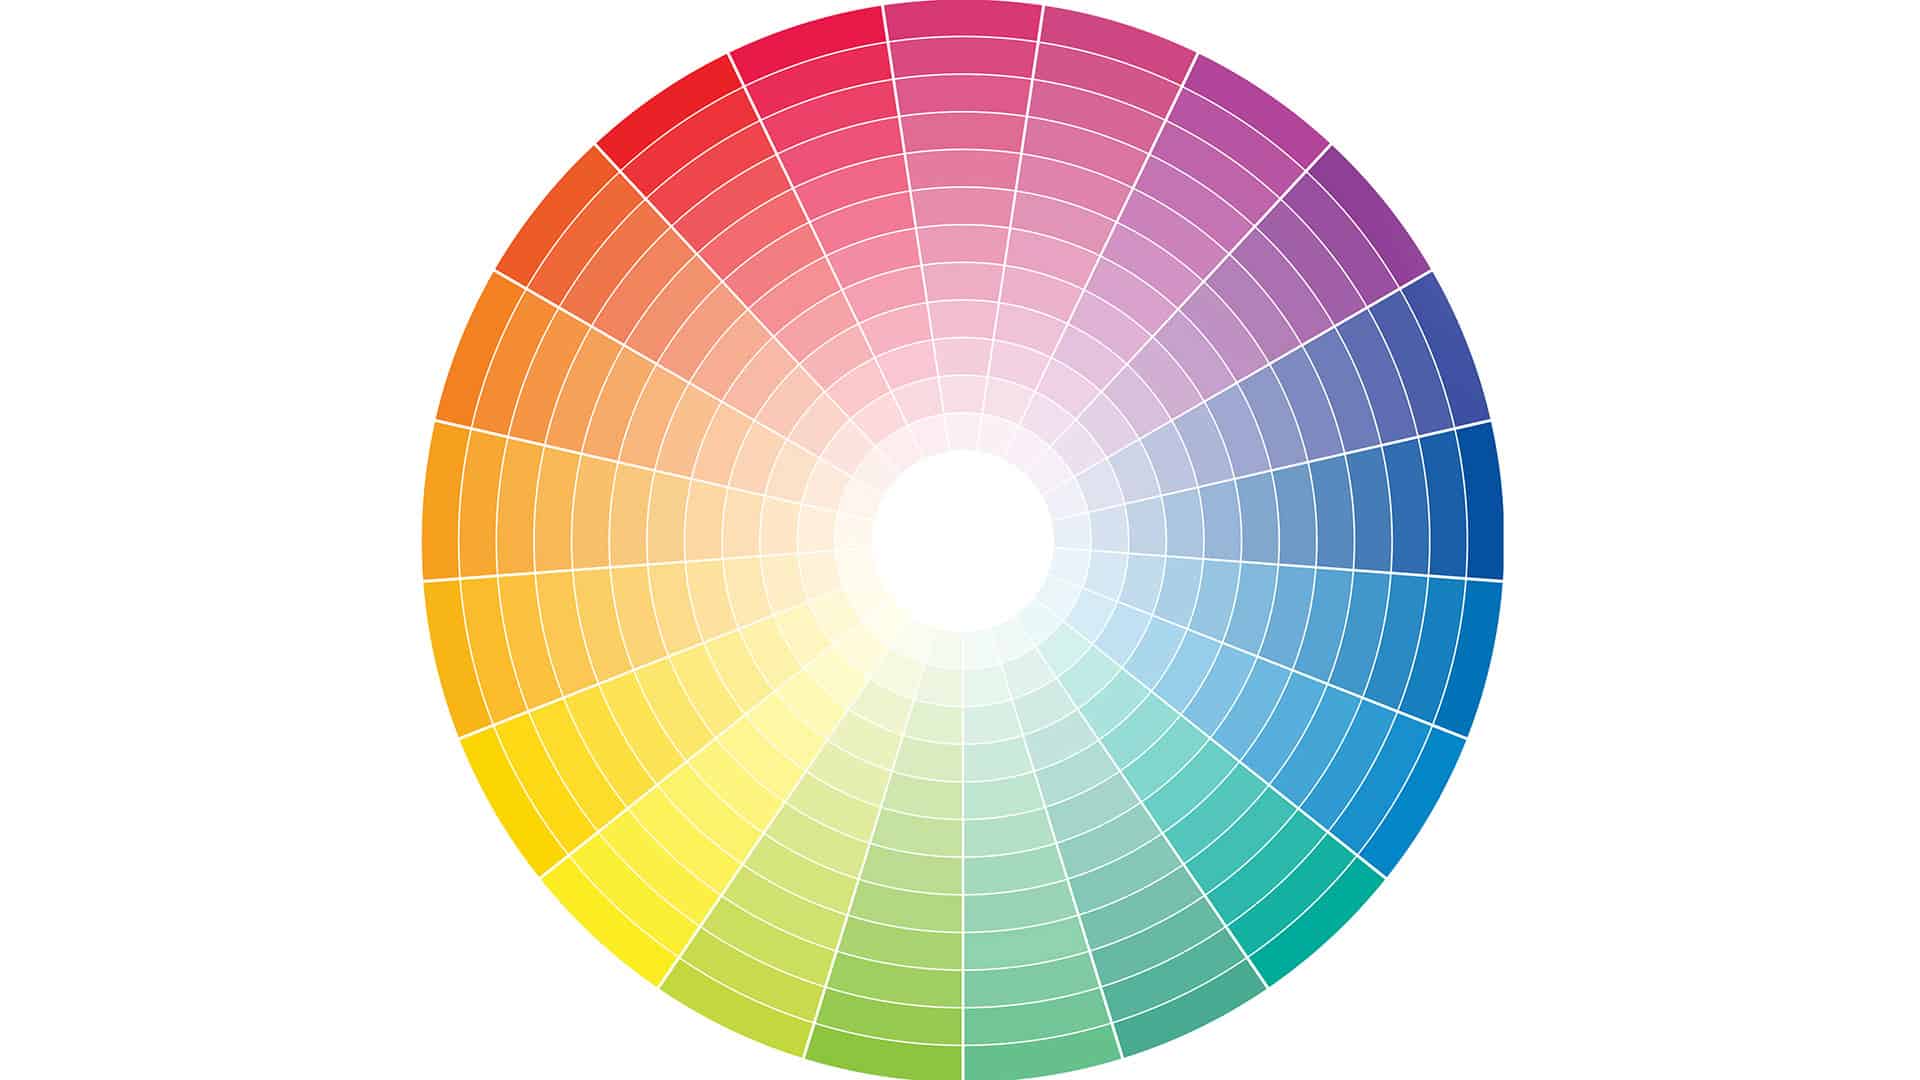 A colour spectrum wheel